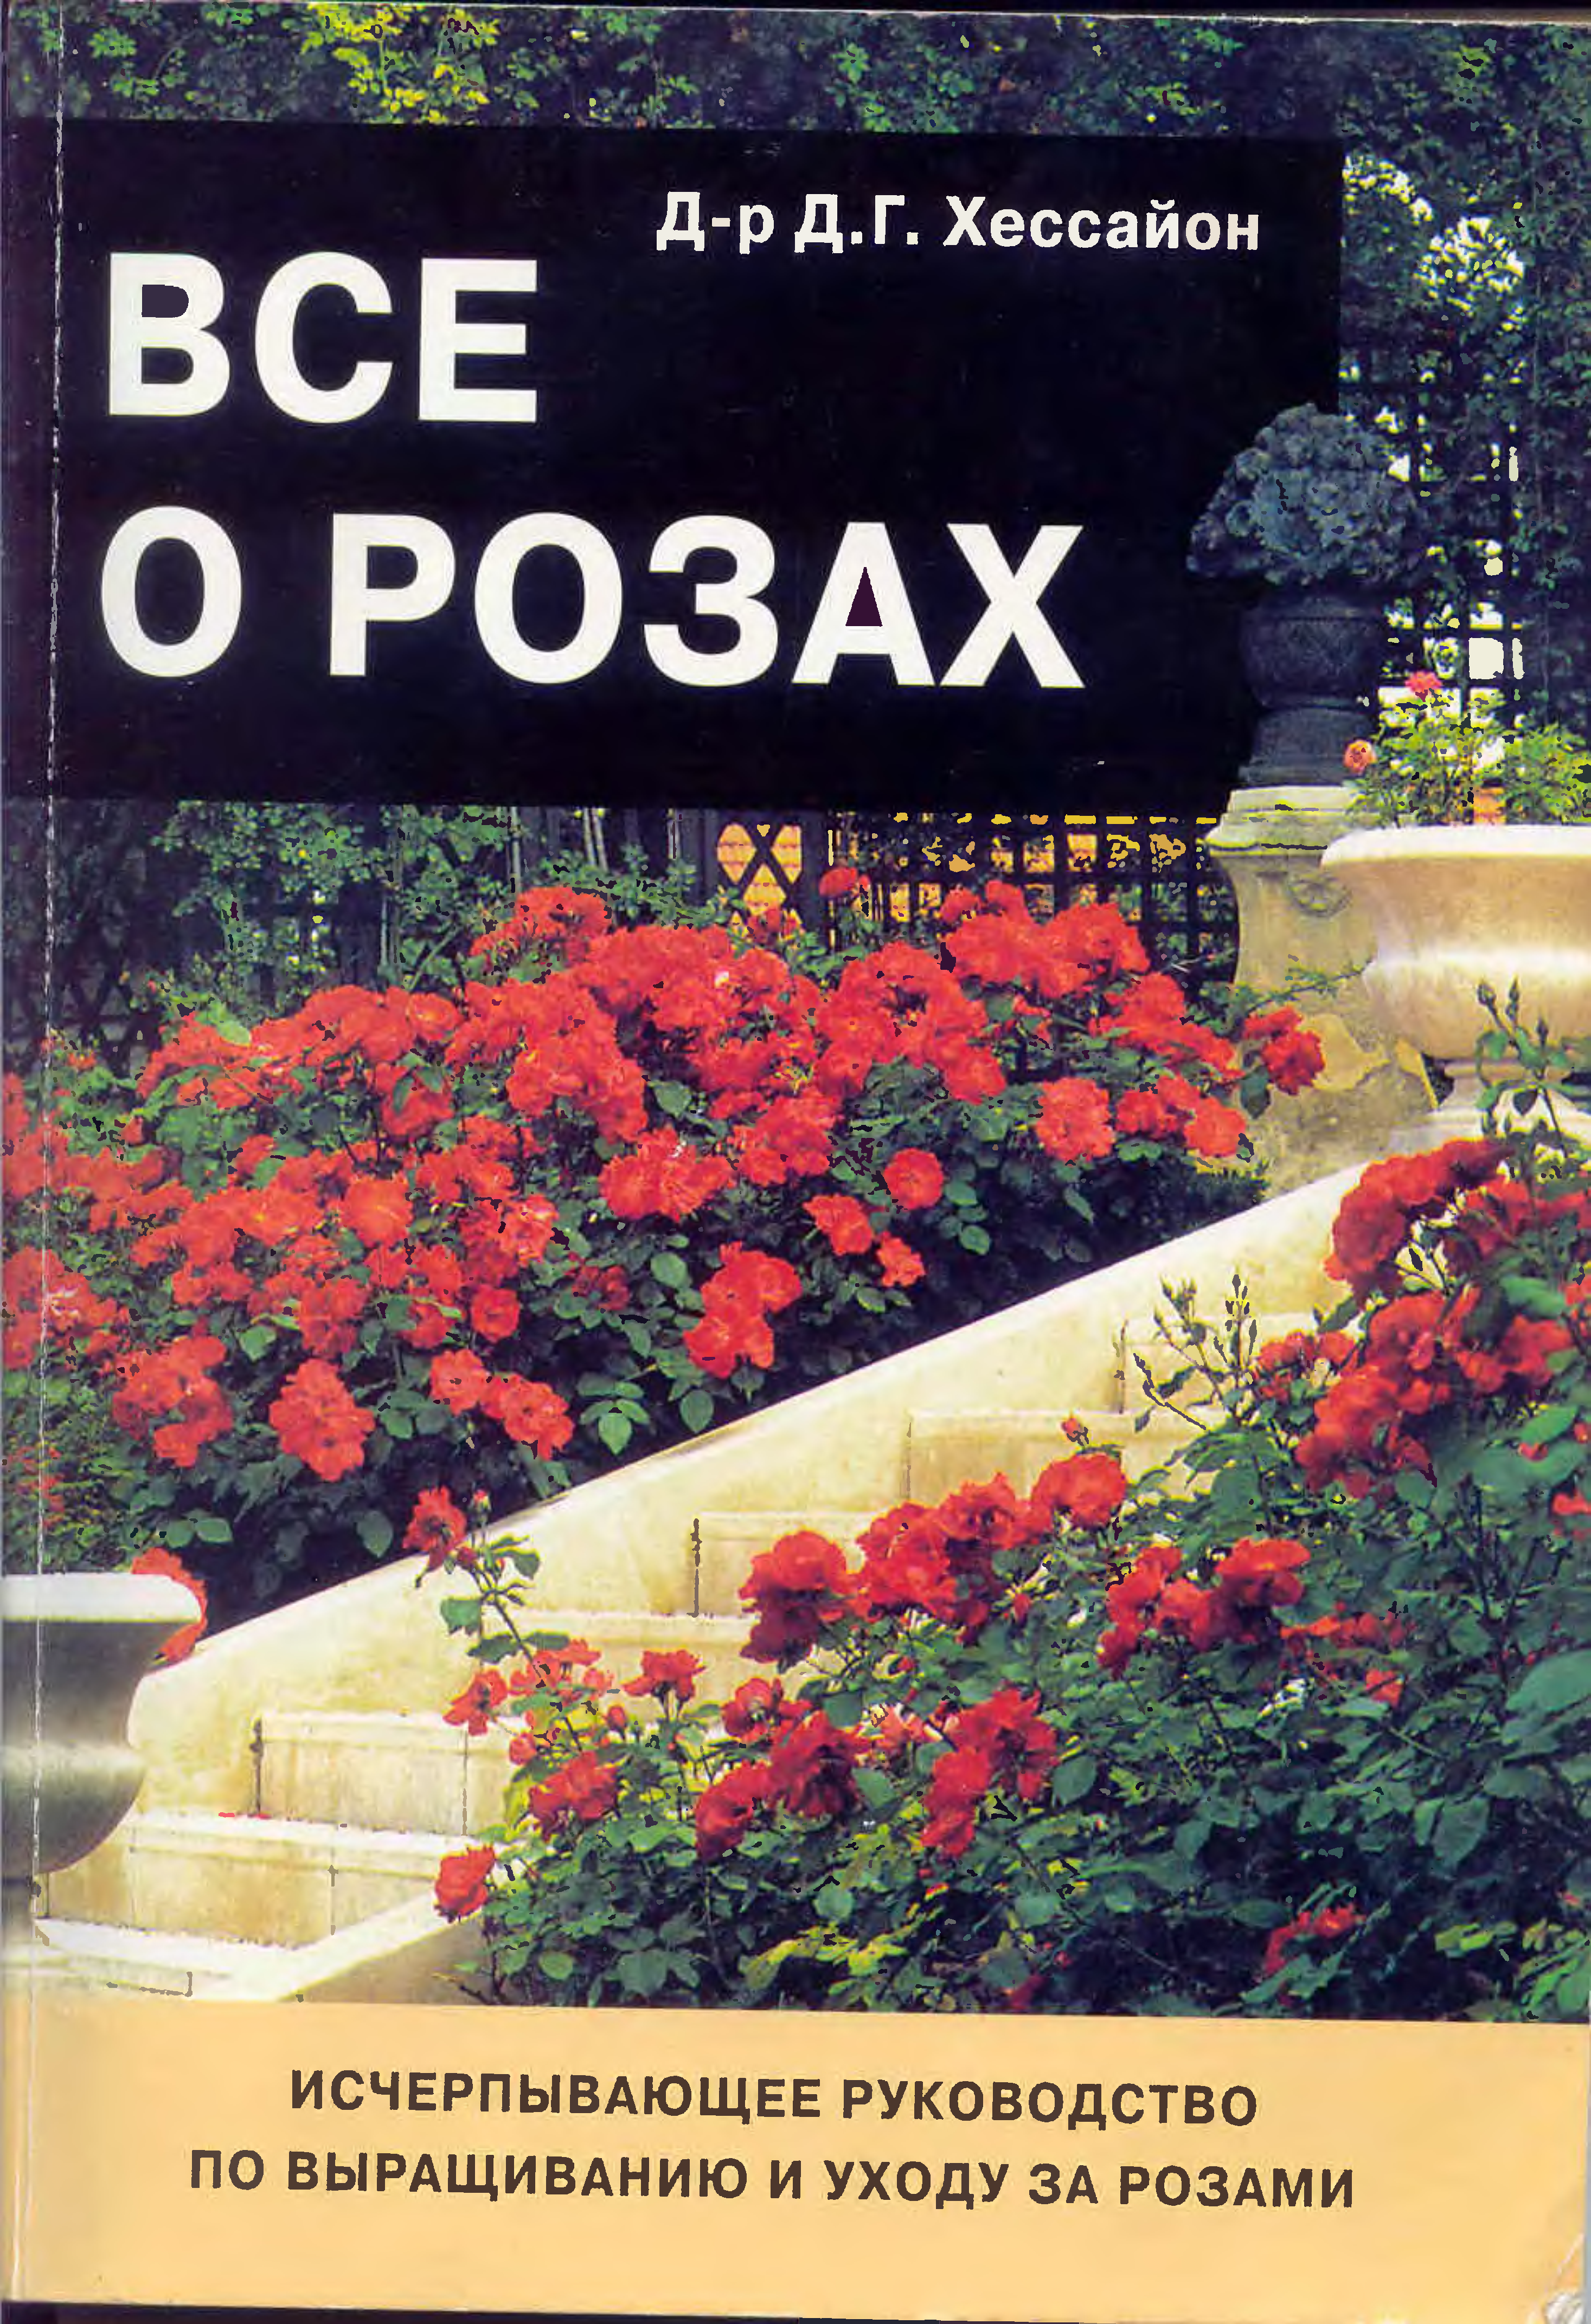 Книга про розы. Книги о выращивании роз. Хессайон розы. Книга все о розах.